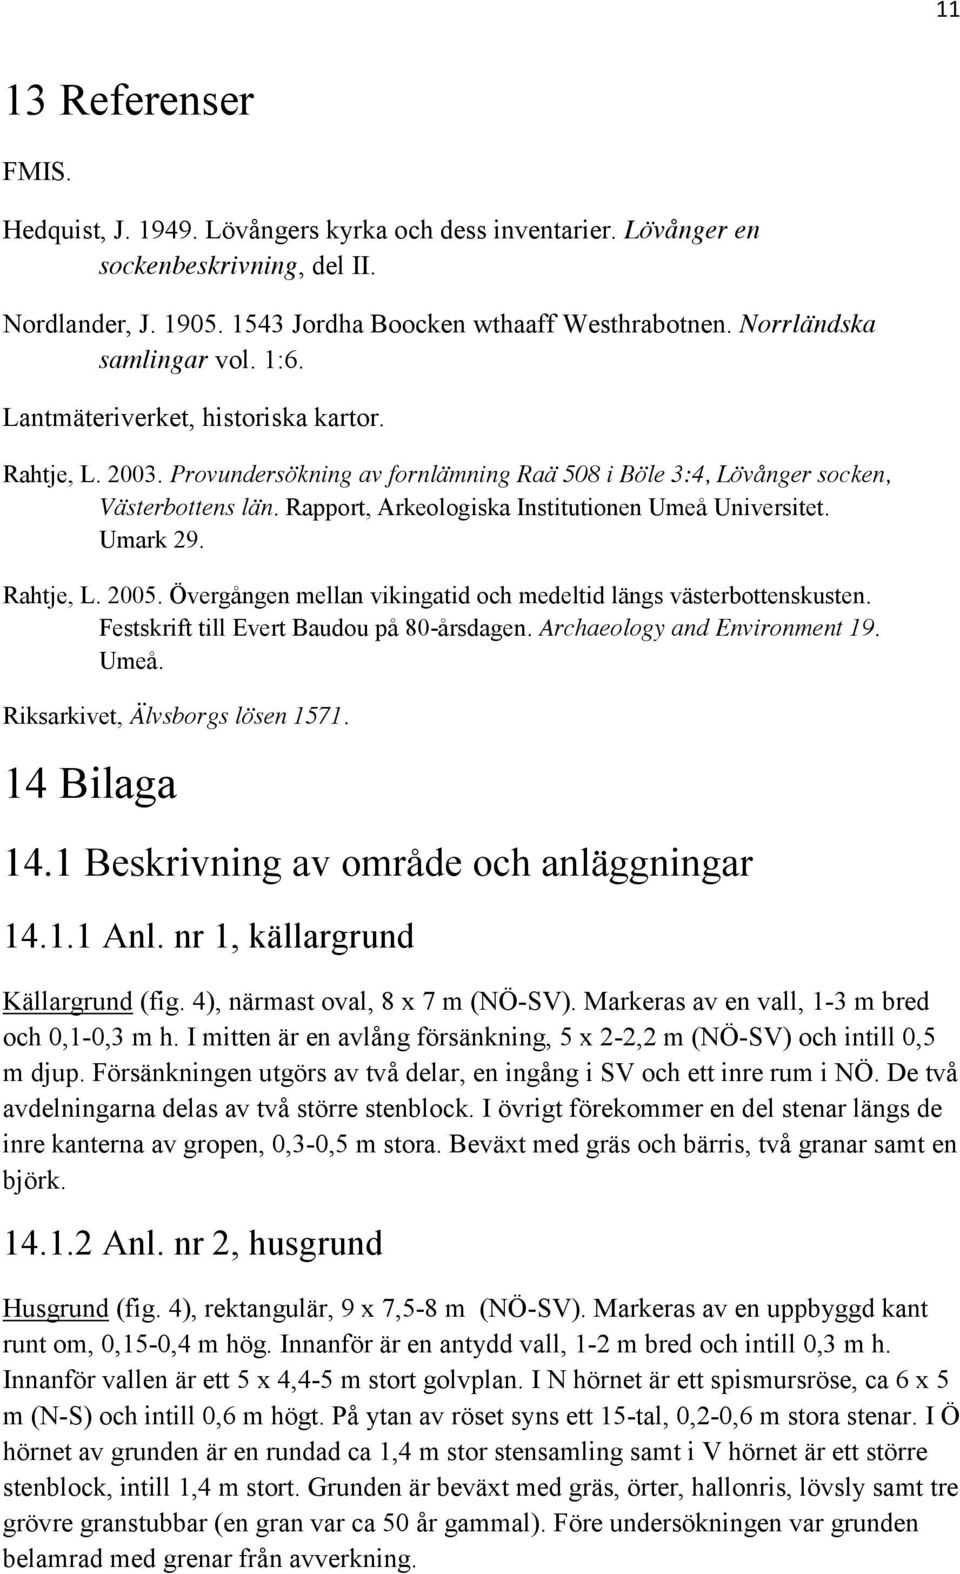 Rapport, Arkeologiska Institutionen Umeå Universitet. Umark 29. Rahtje, L. 2005. Övergången mellan vikingatid och medeltid längs västerbottenskusten. Festskrift till Evert Baudou på 80-årsdagen.